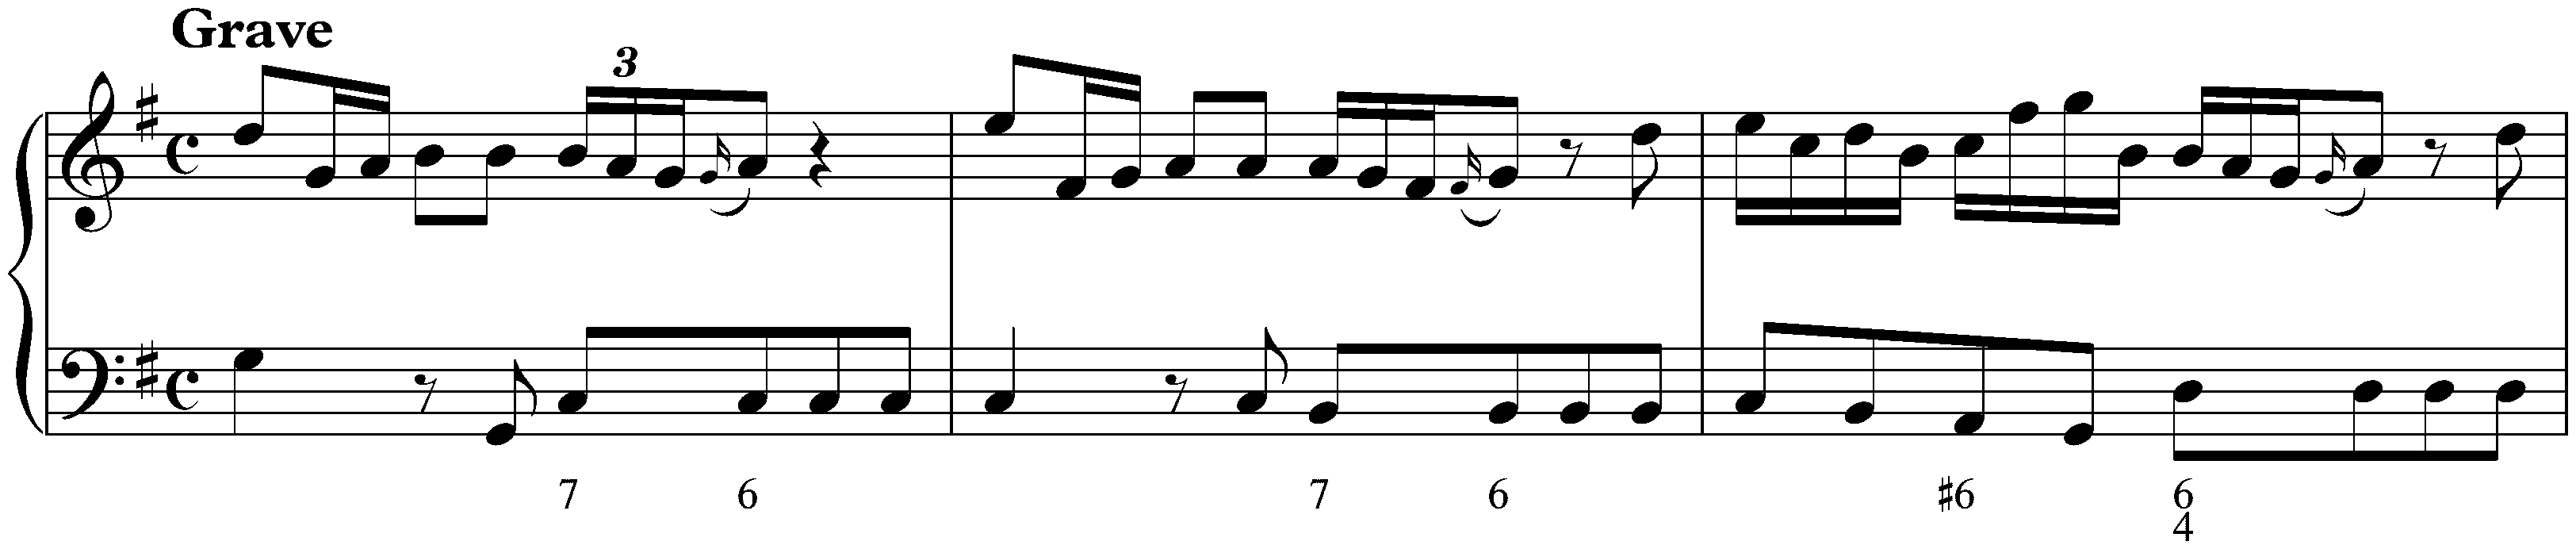 Sonata in G major, K. 91; 1. Grave